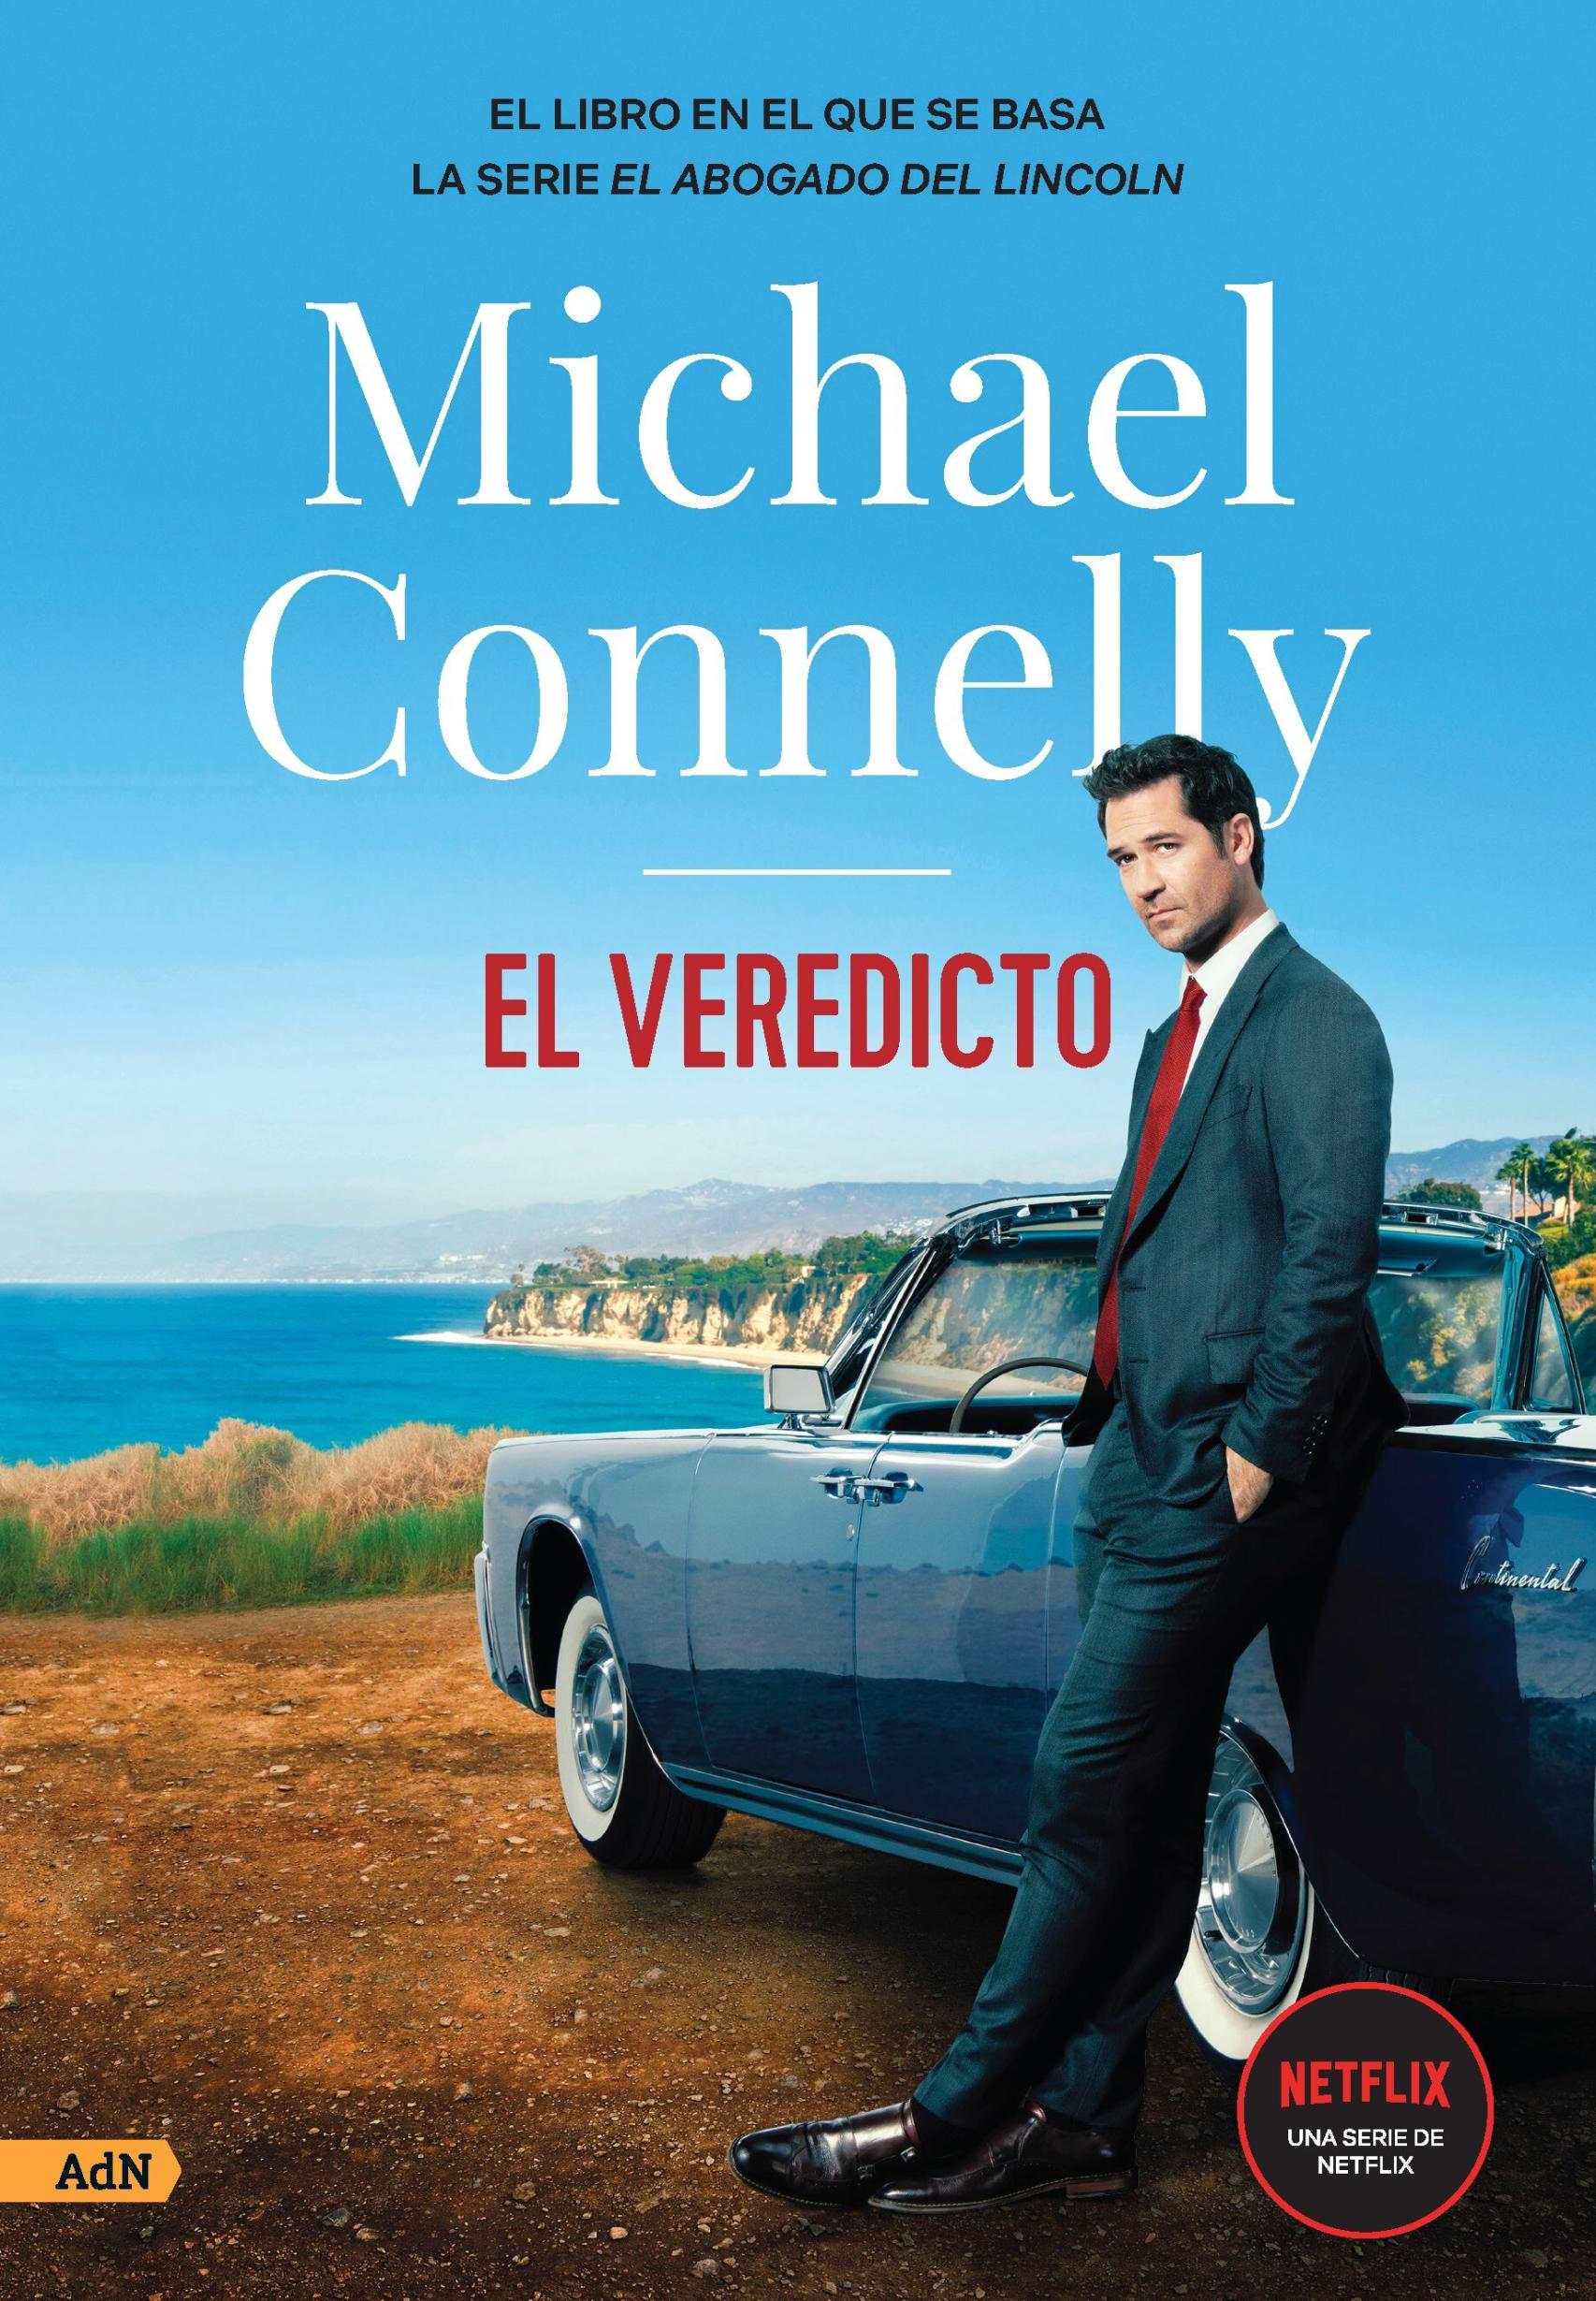 Michael Connelly y sus novelas de crimen